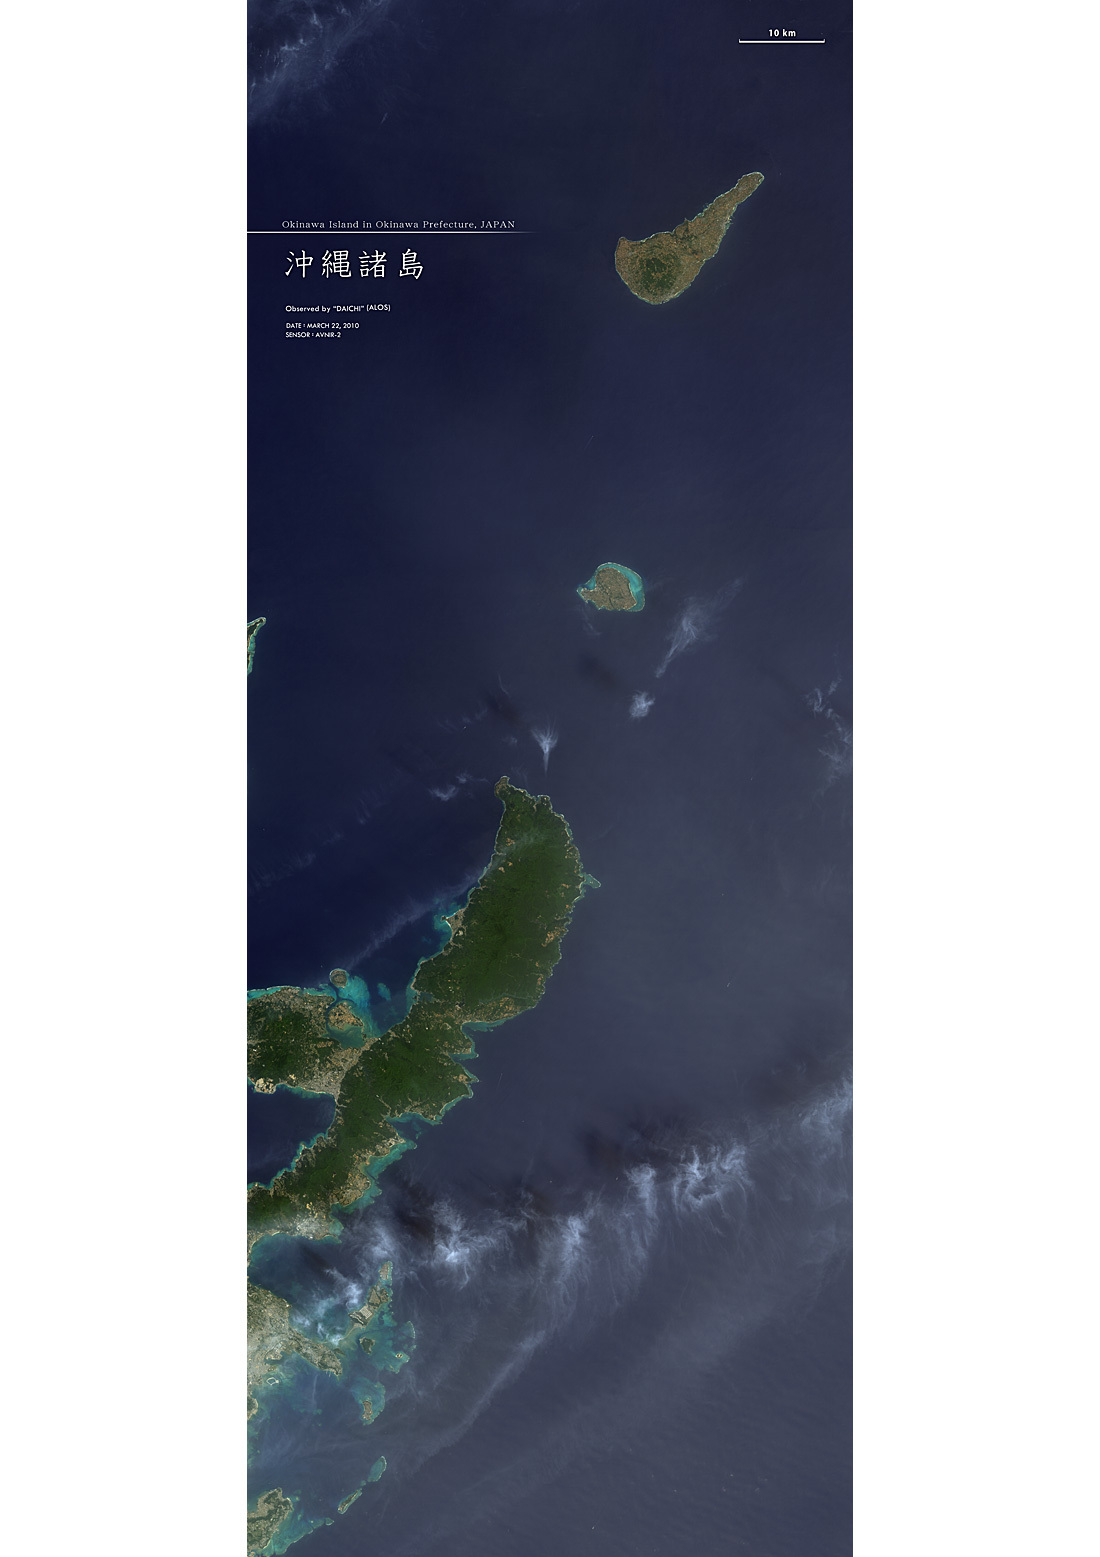 だいちから見た日本の都市 沖縄本島と島々 :衛星画像（ポスター仕上げ）